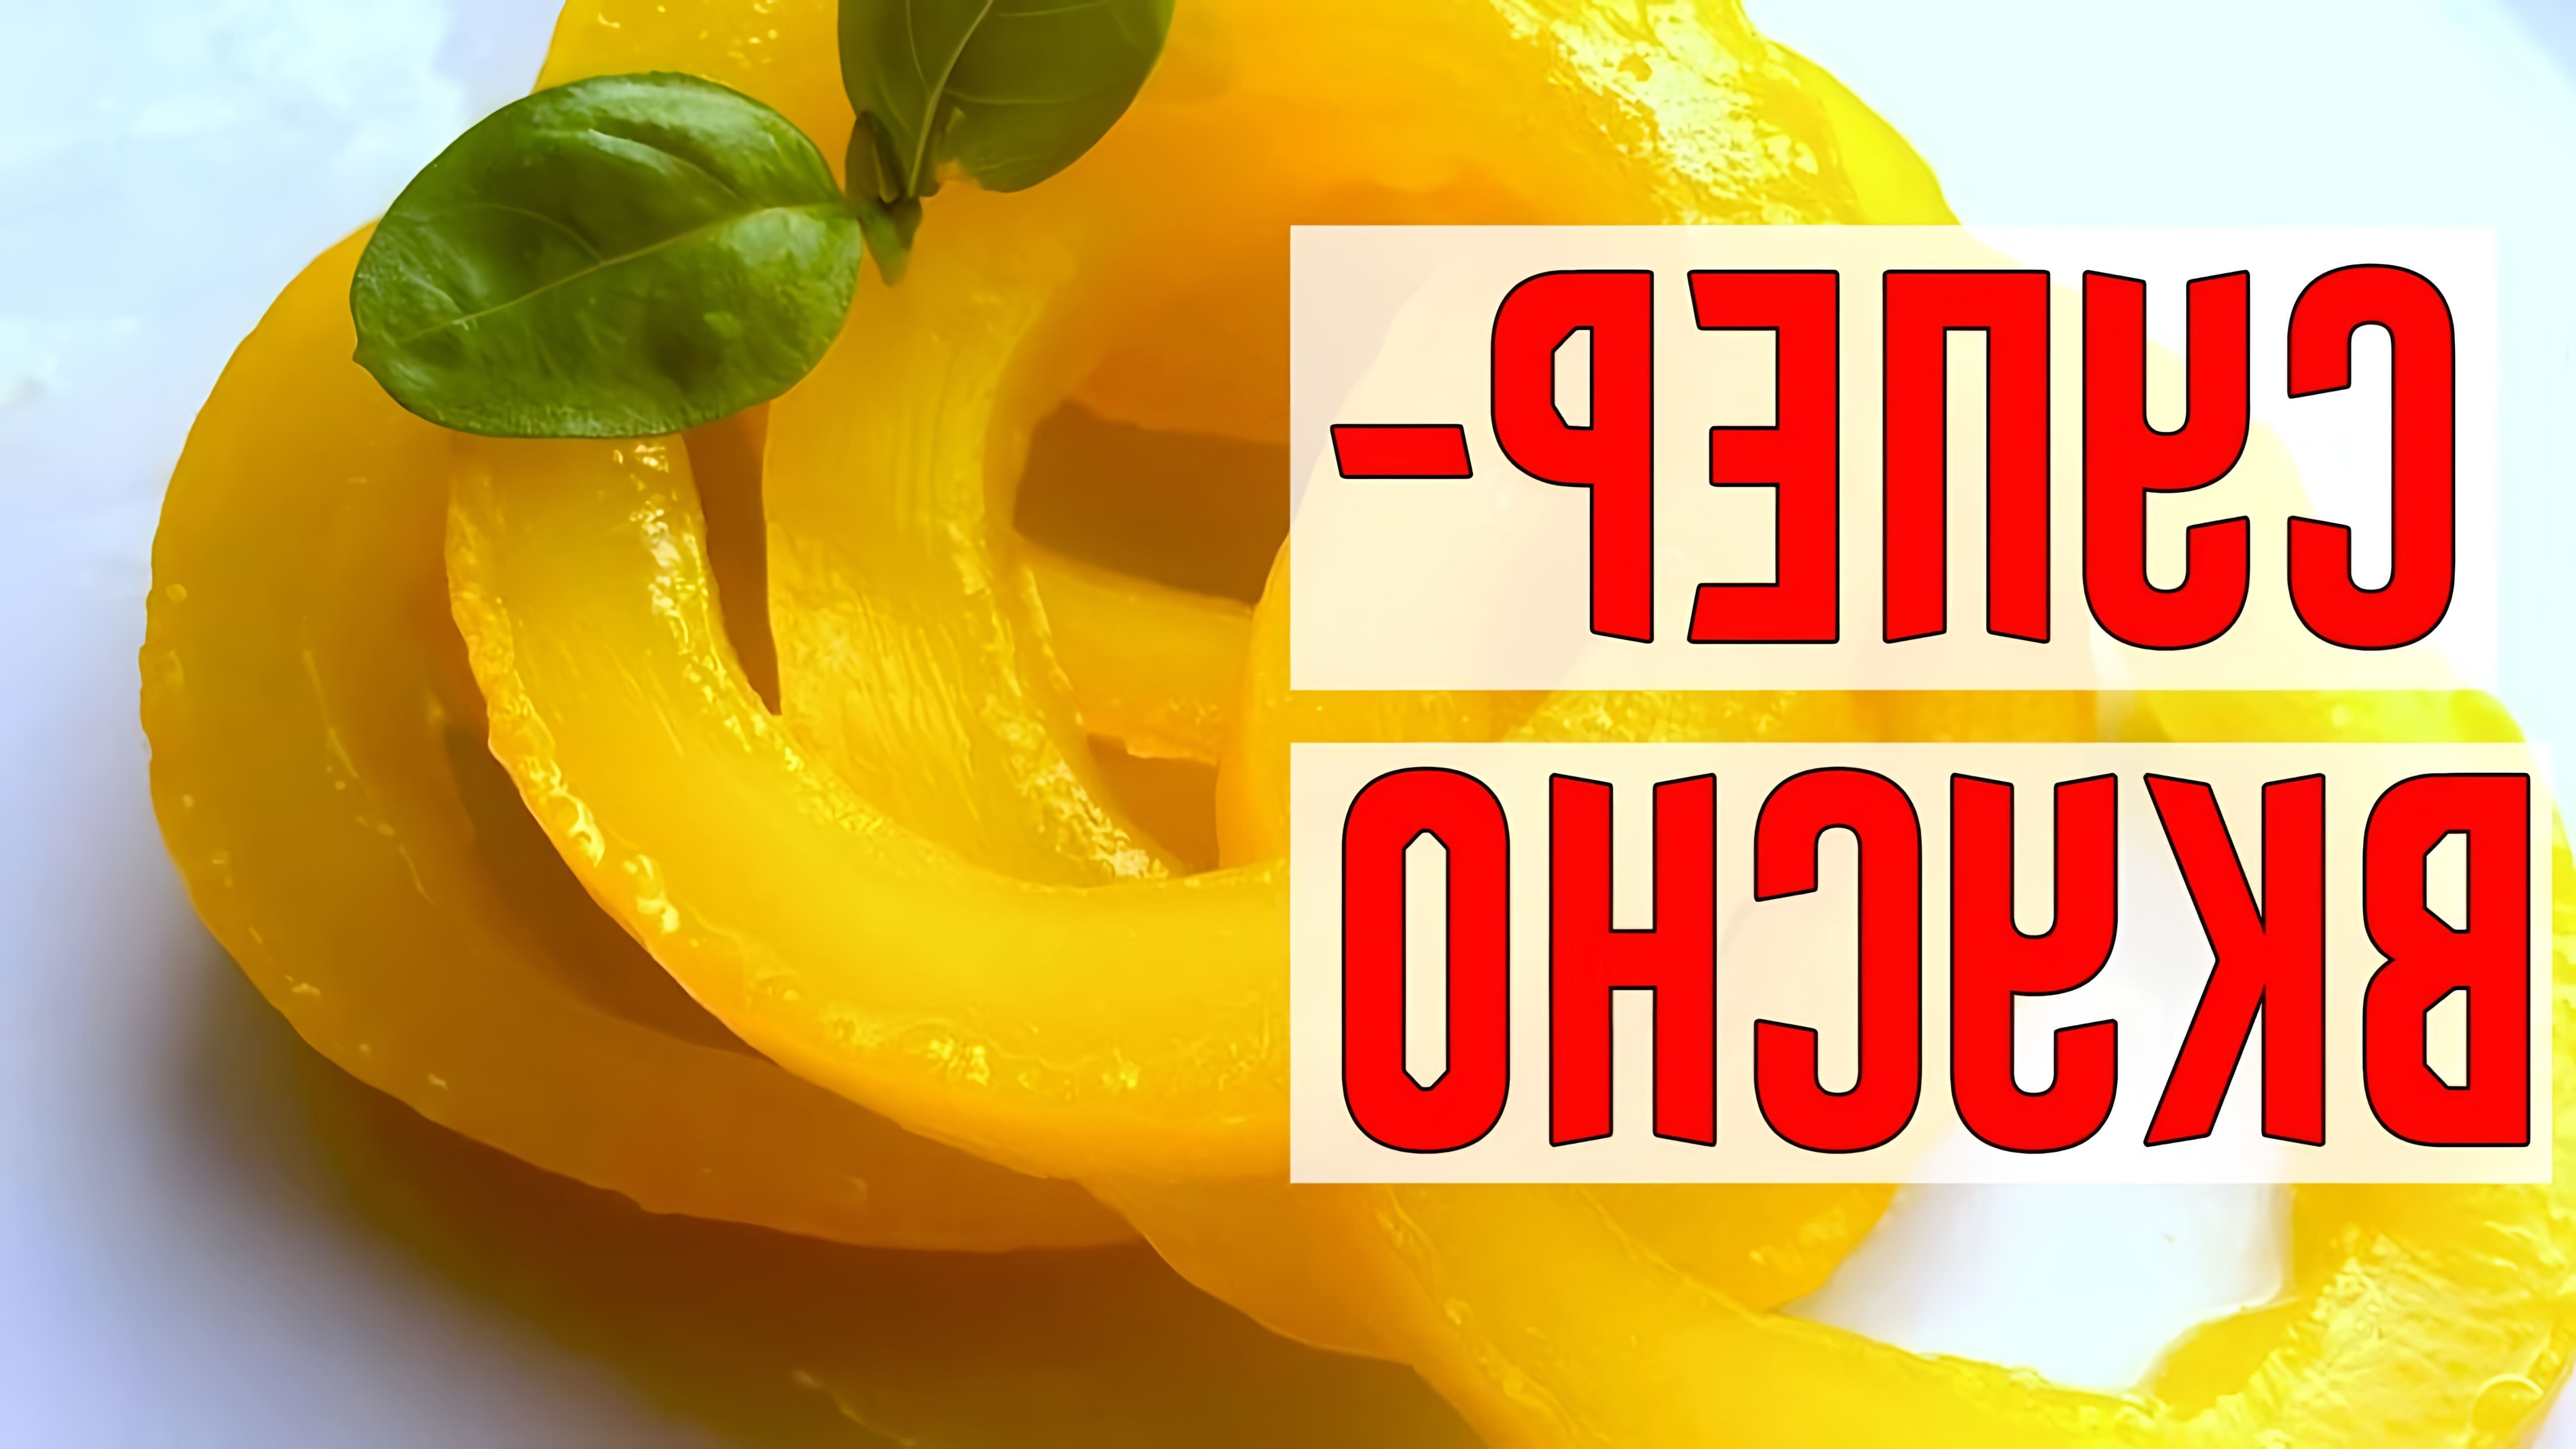 В этом видео демонстрируется рецепт приготовления ананасов из кабачков